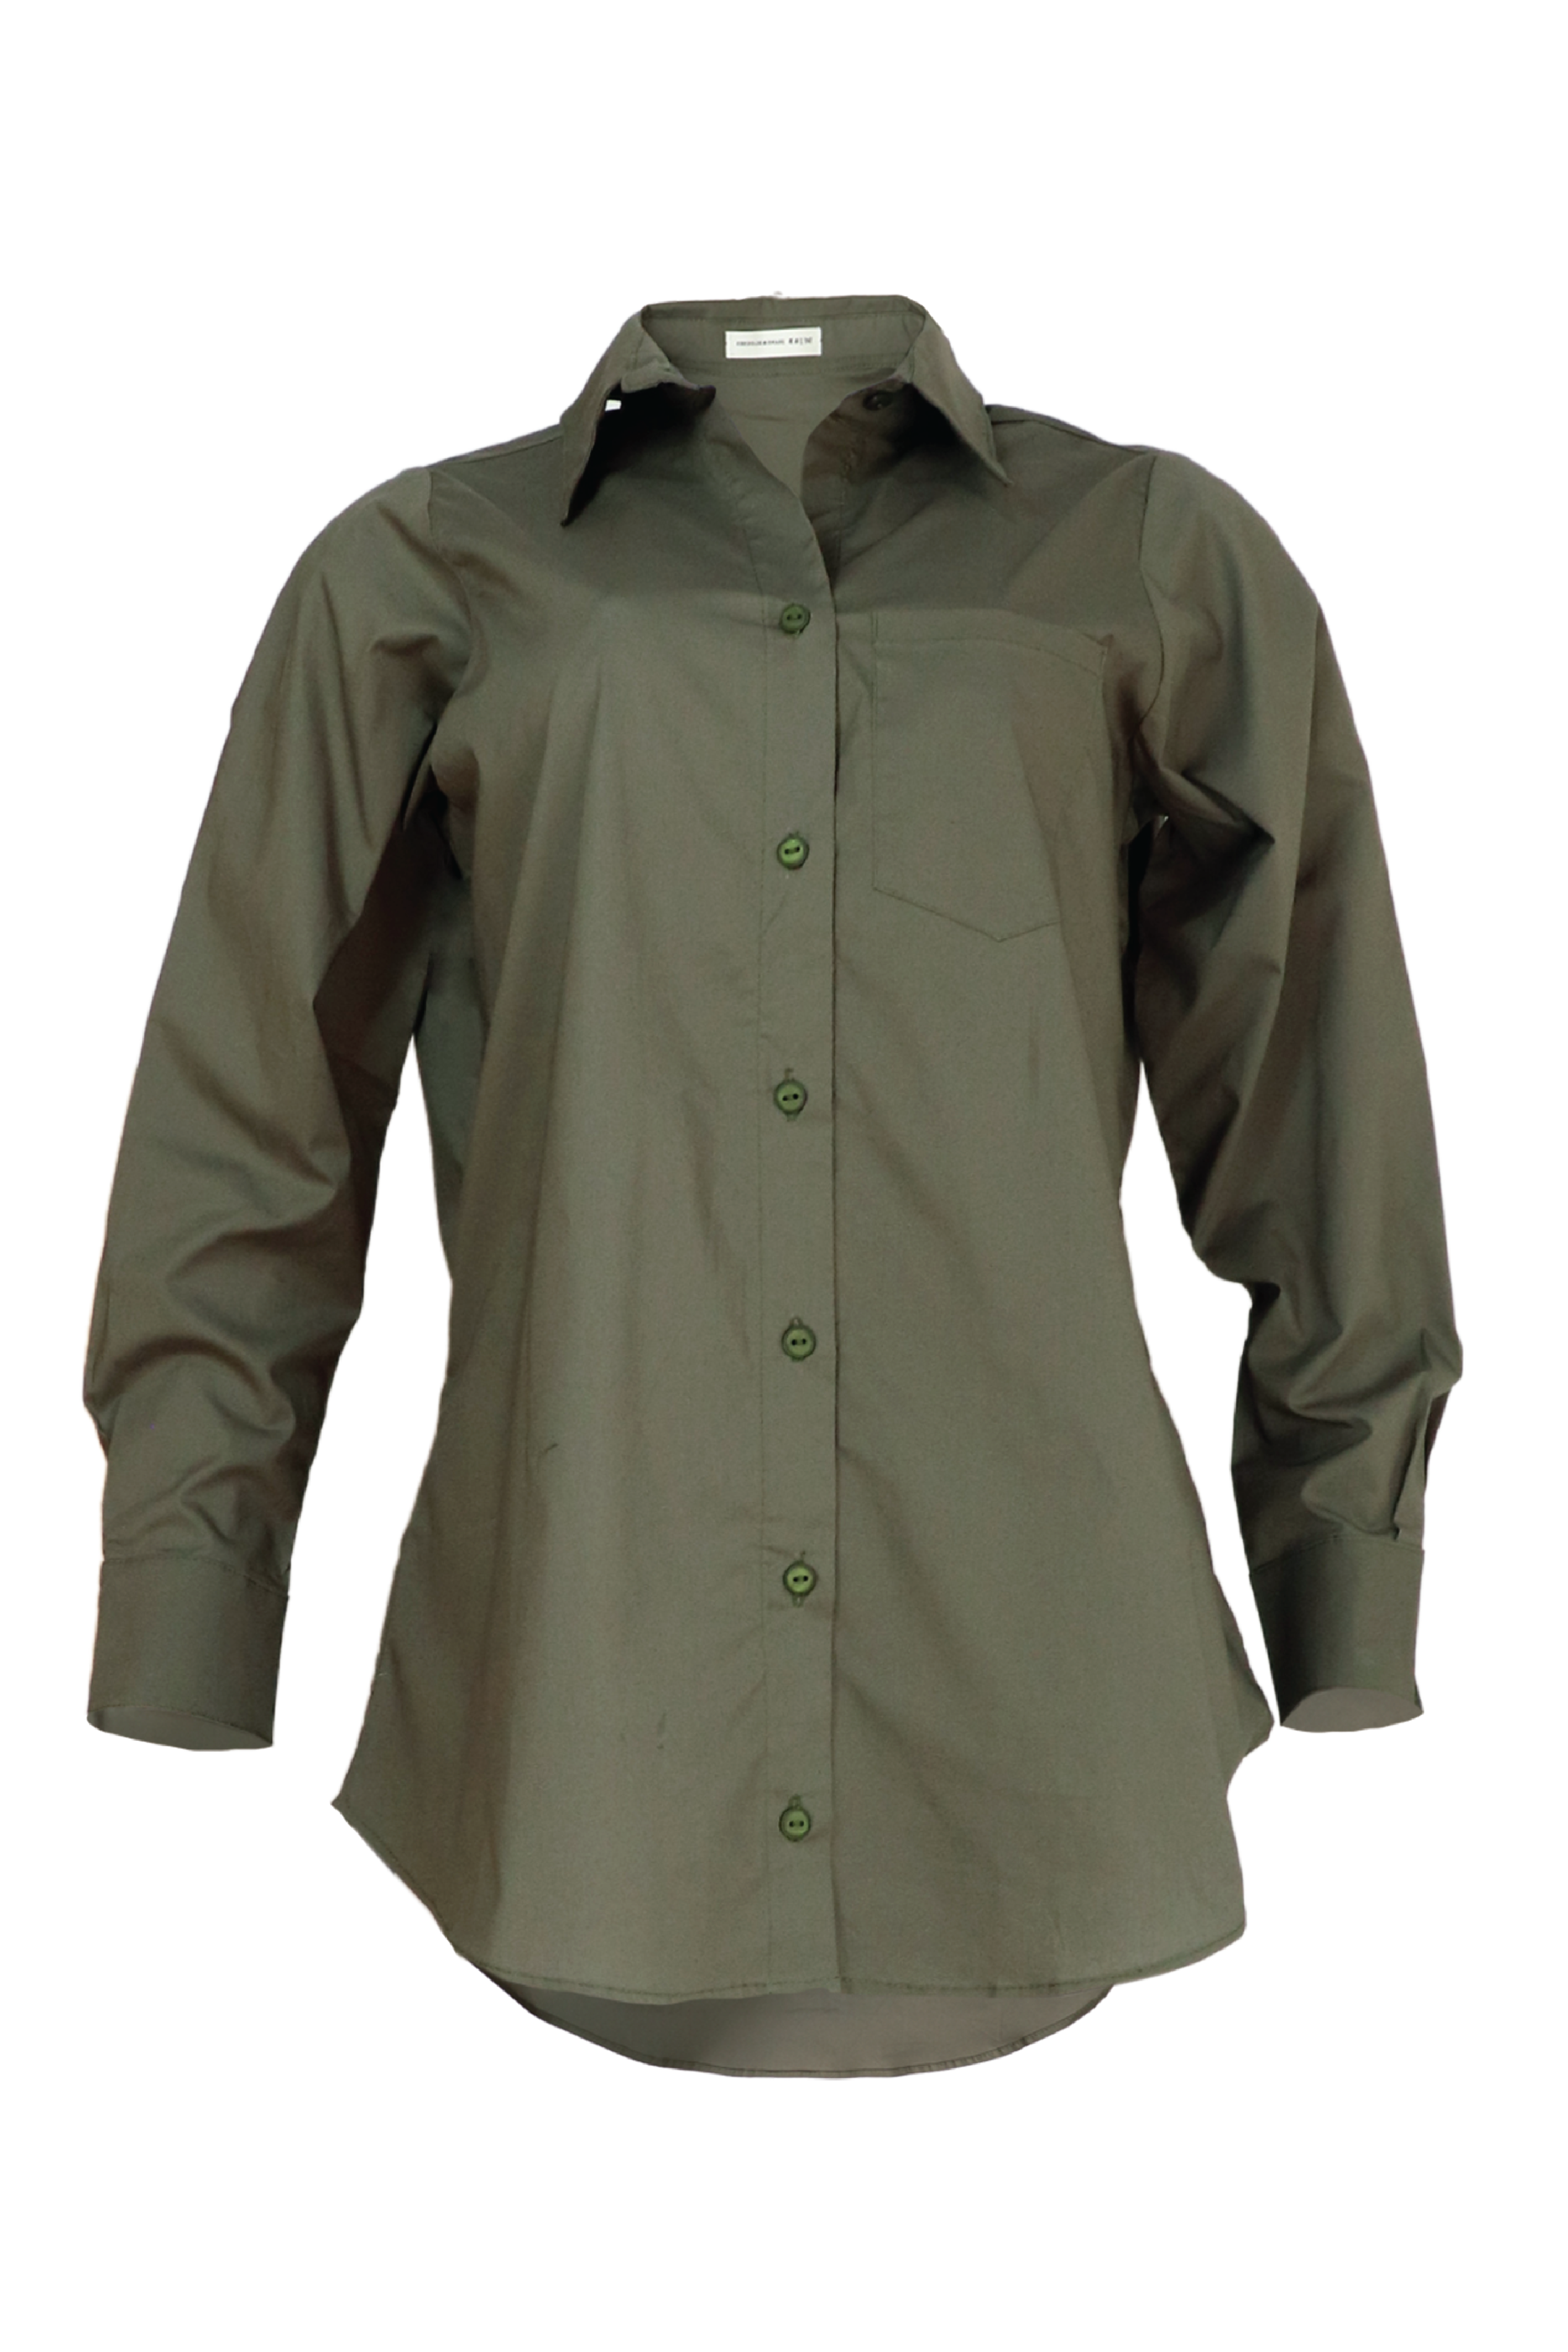 Camisa manga larga color verde militar